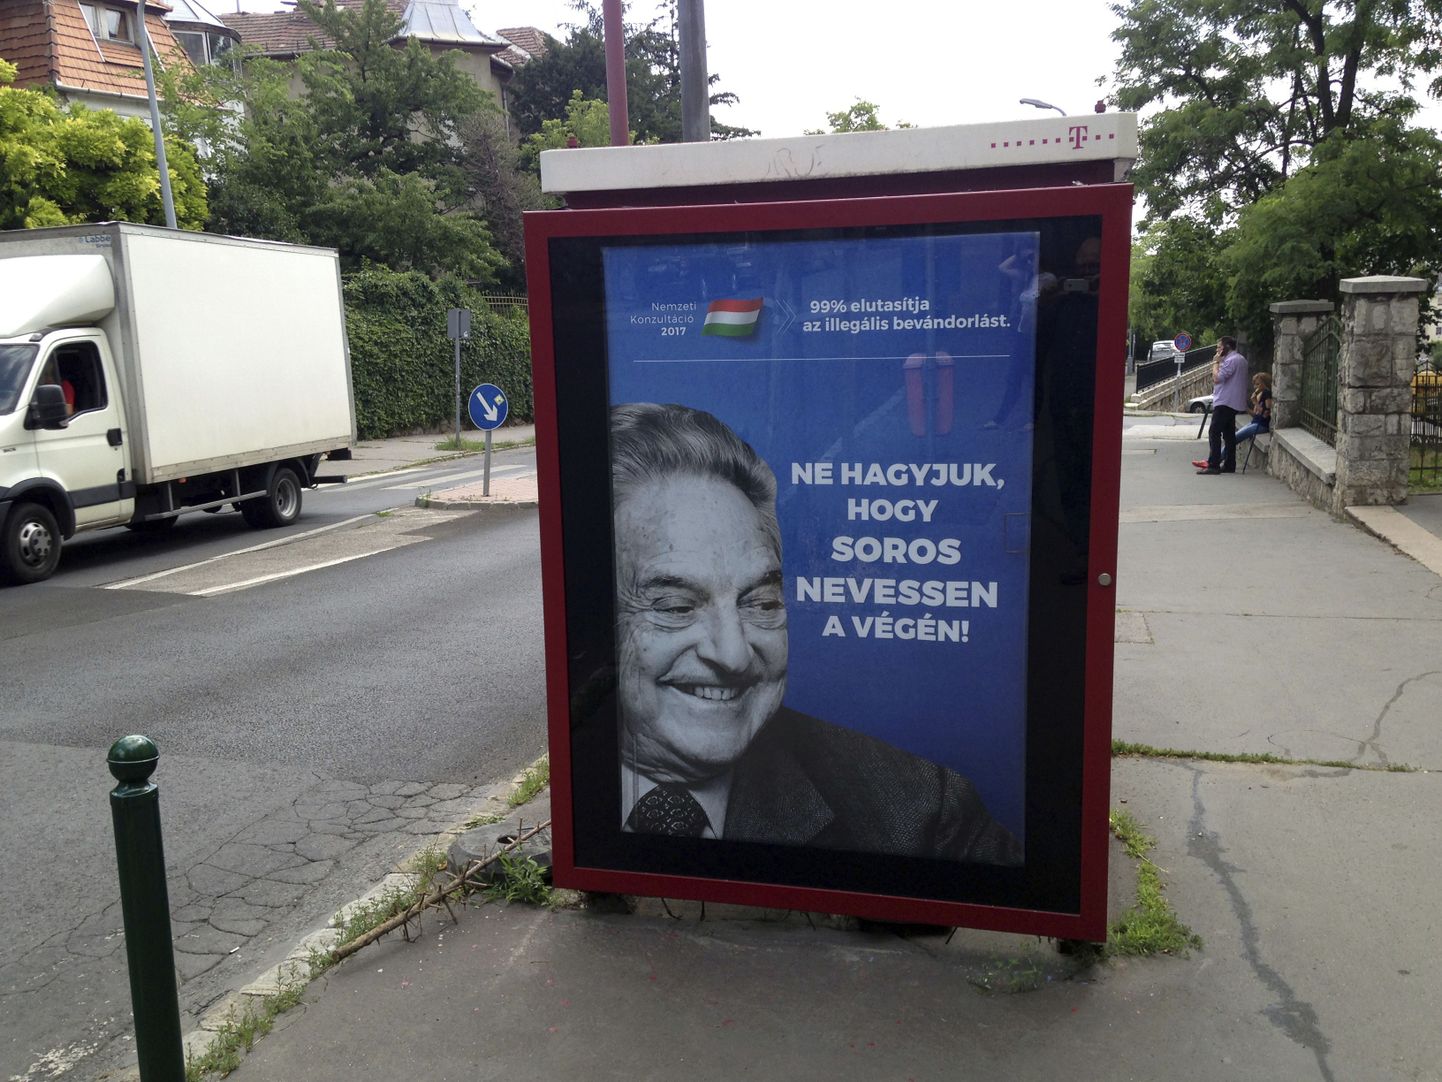 «Ärge laske Sorosel viimasena naerda!» teatab riigi rahadega tellitud kampaaniaplakat Budapesti tänaval.